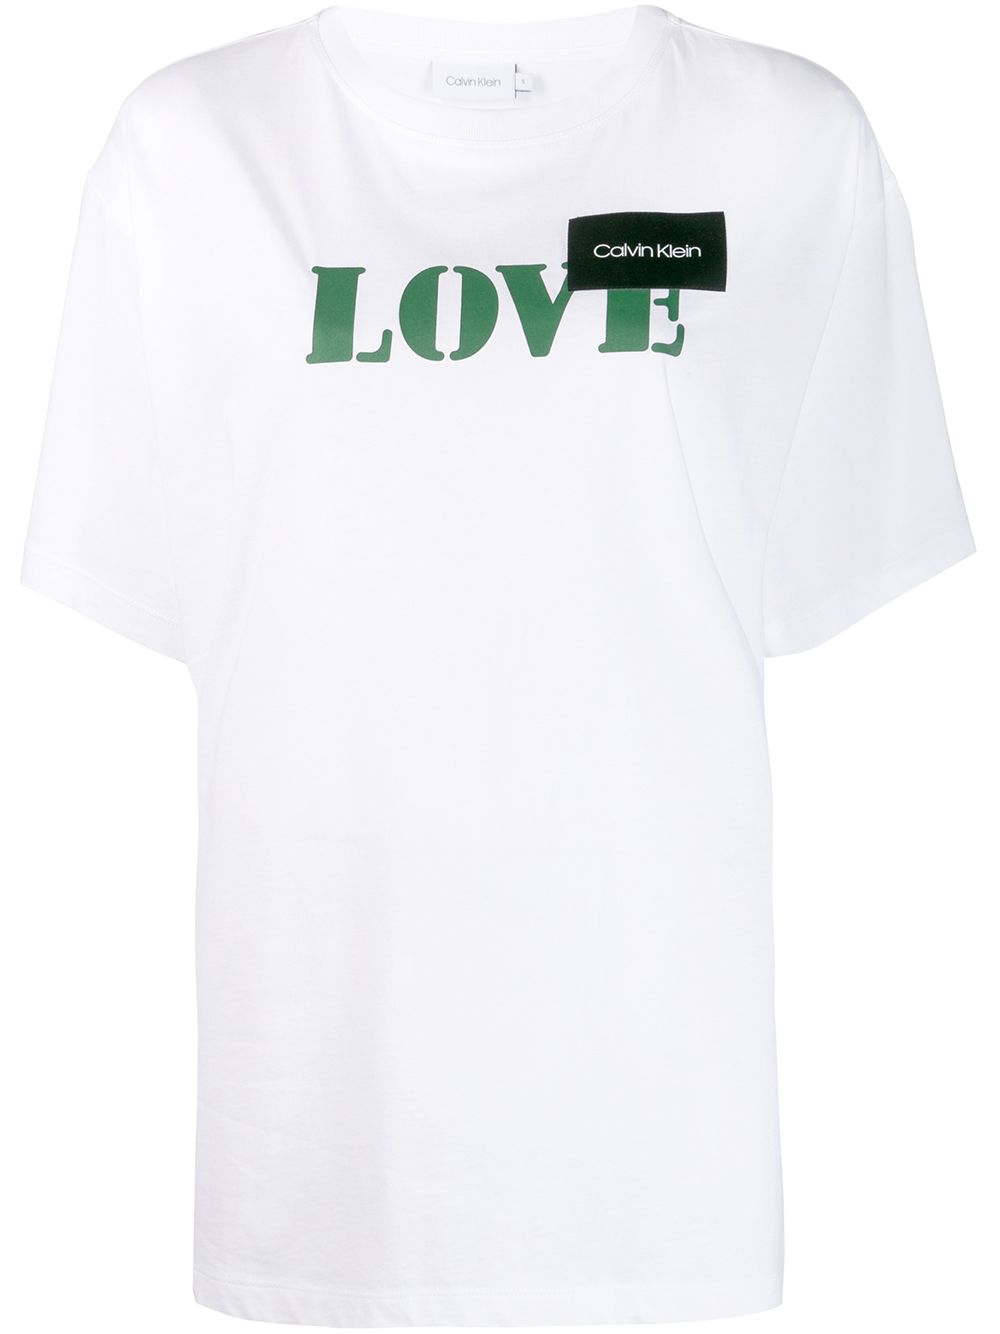 фото Calvin Klein футболка с принтом Love